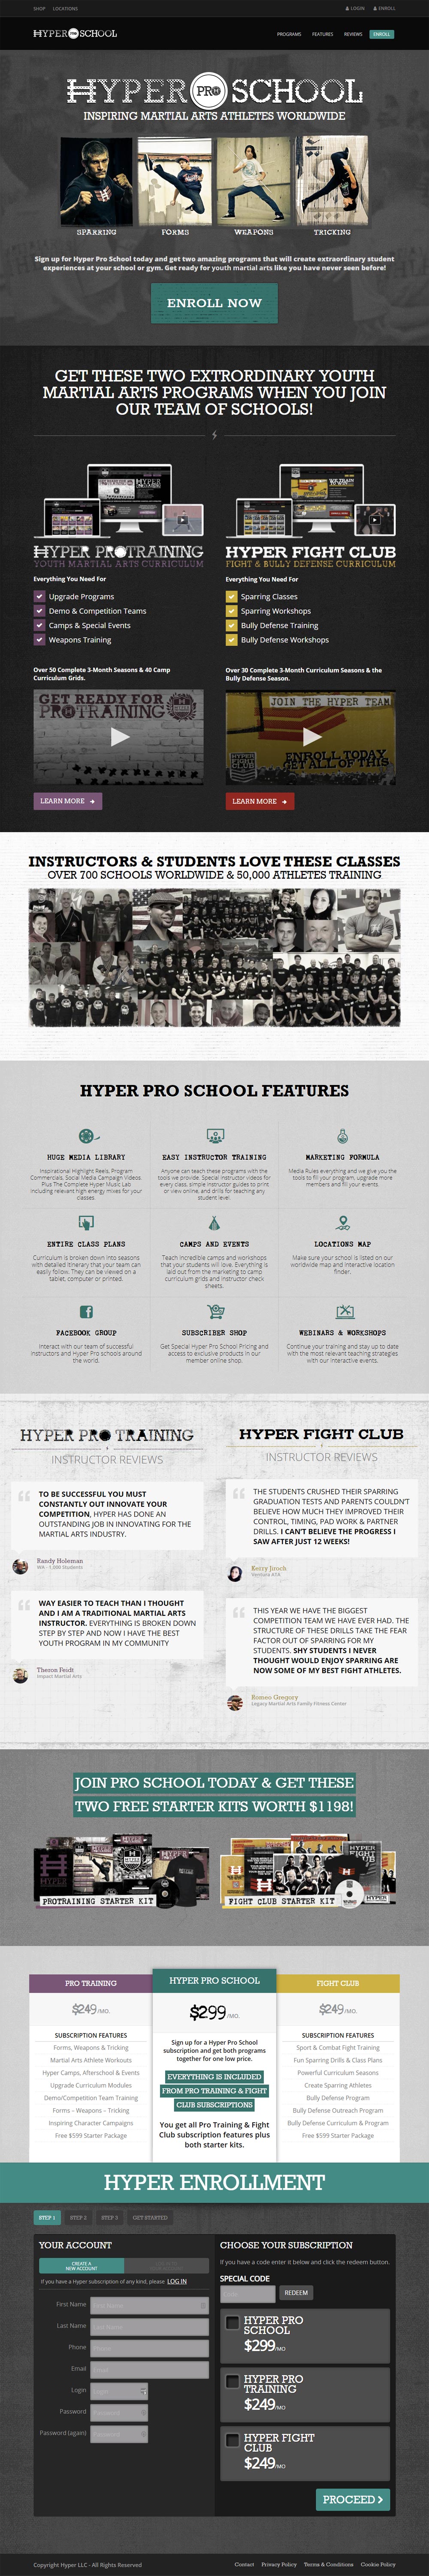 Hyper Pro School